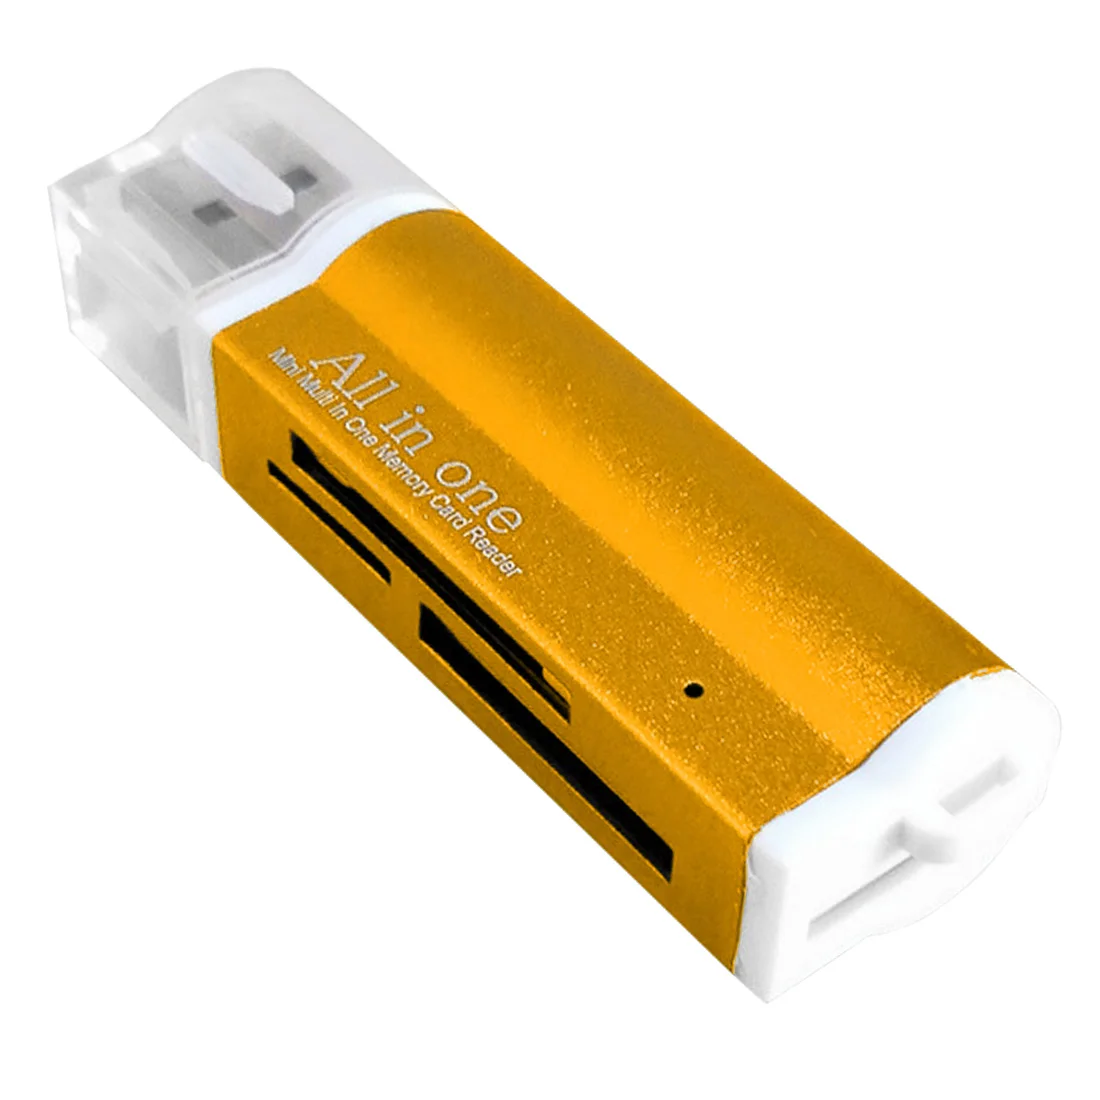 Разноцветный для картридер 2 микро-sd TF M2 MMC MS PRO DUO все в 1 Micro USB 2,0 Устройство чтения карт памяти адаптер кард-ридер